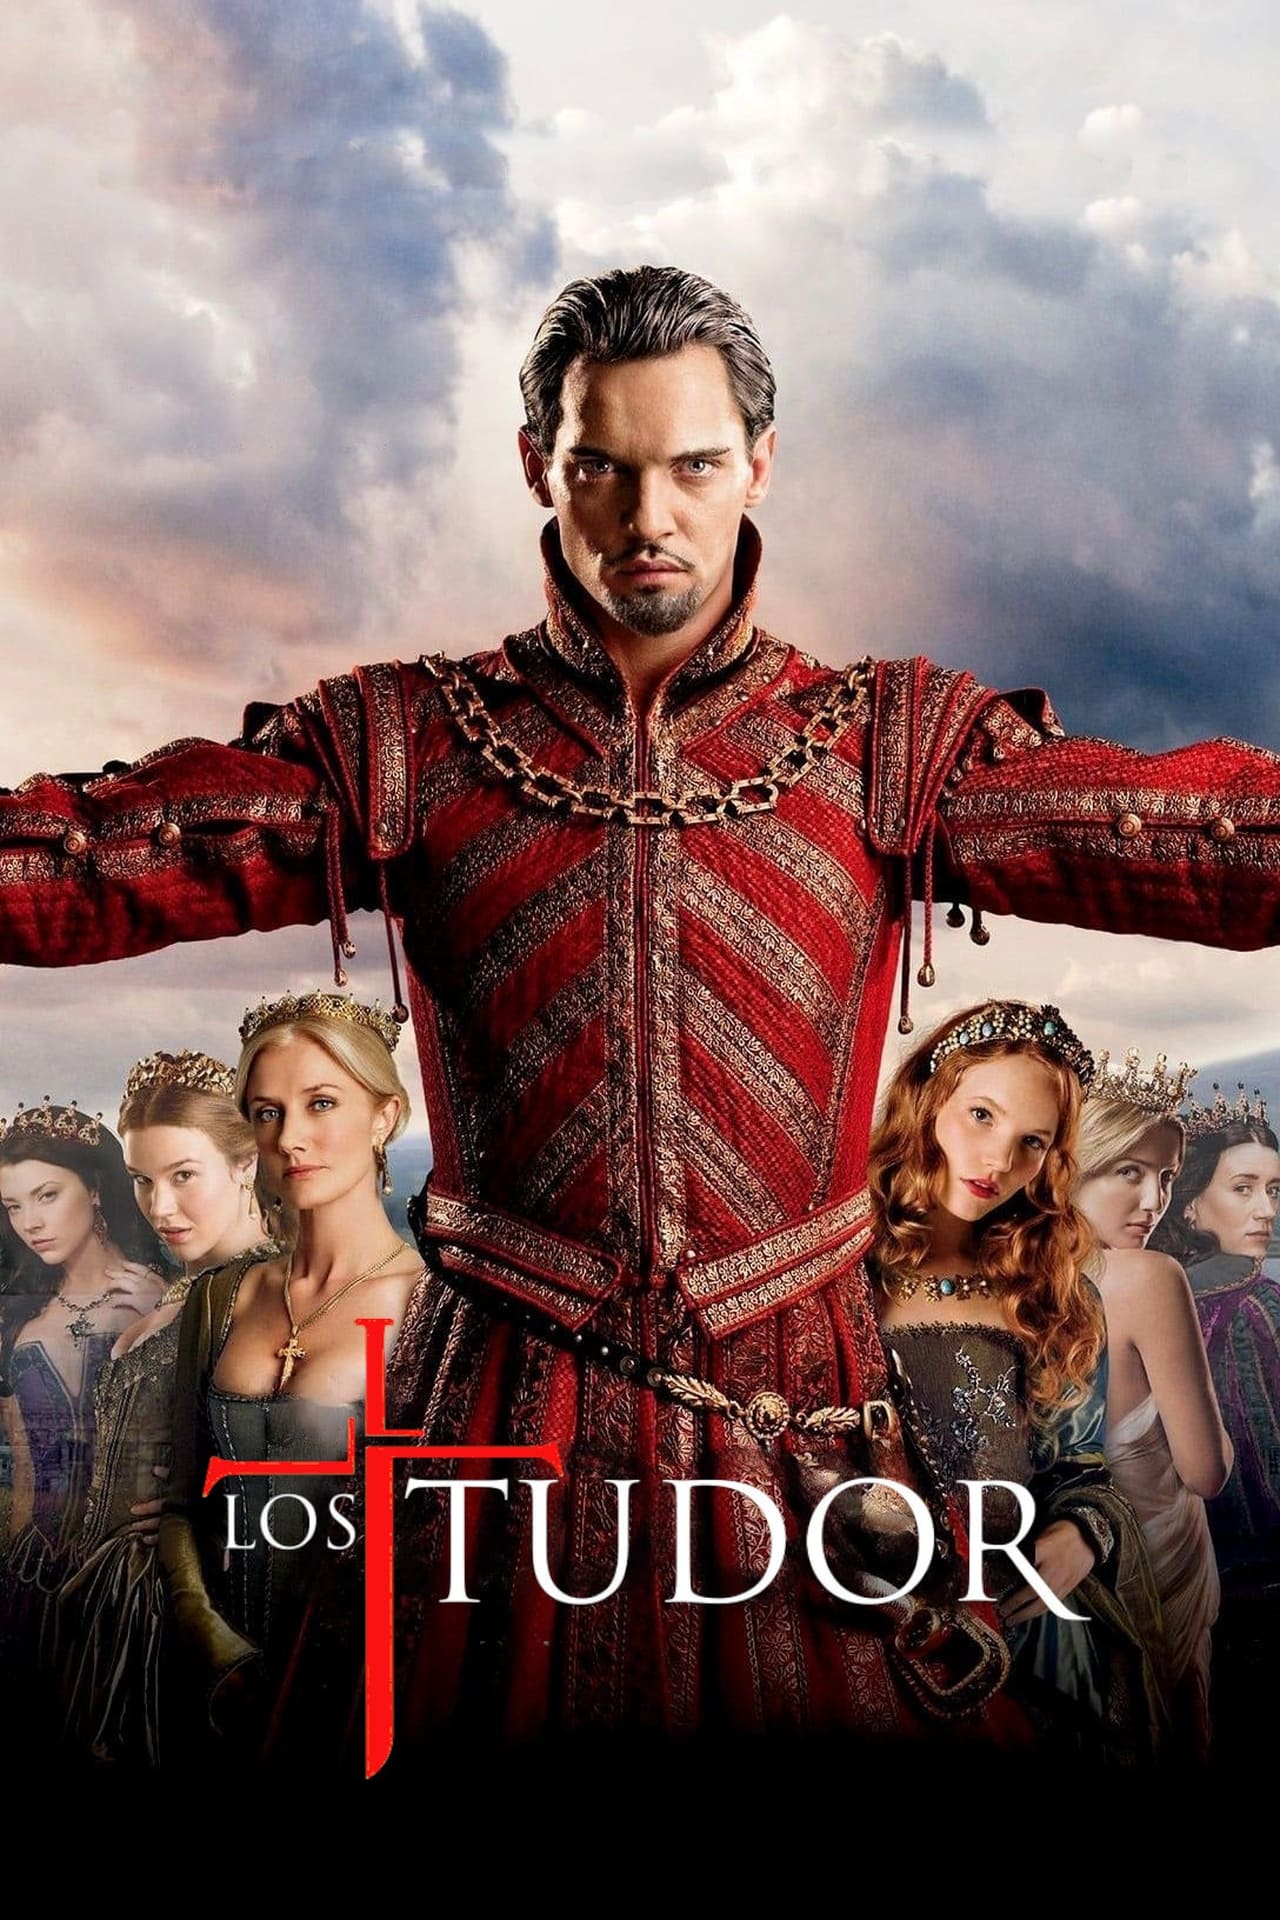 Image Los Tudor